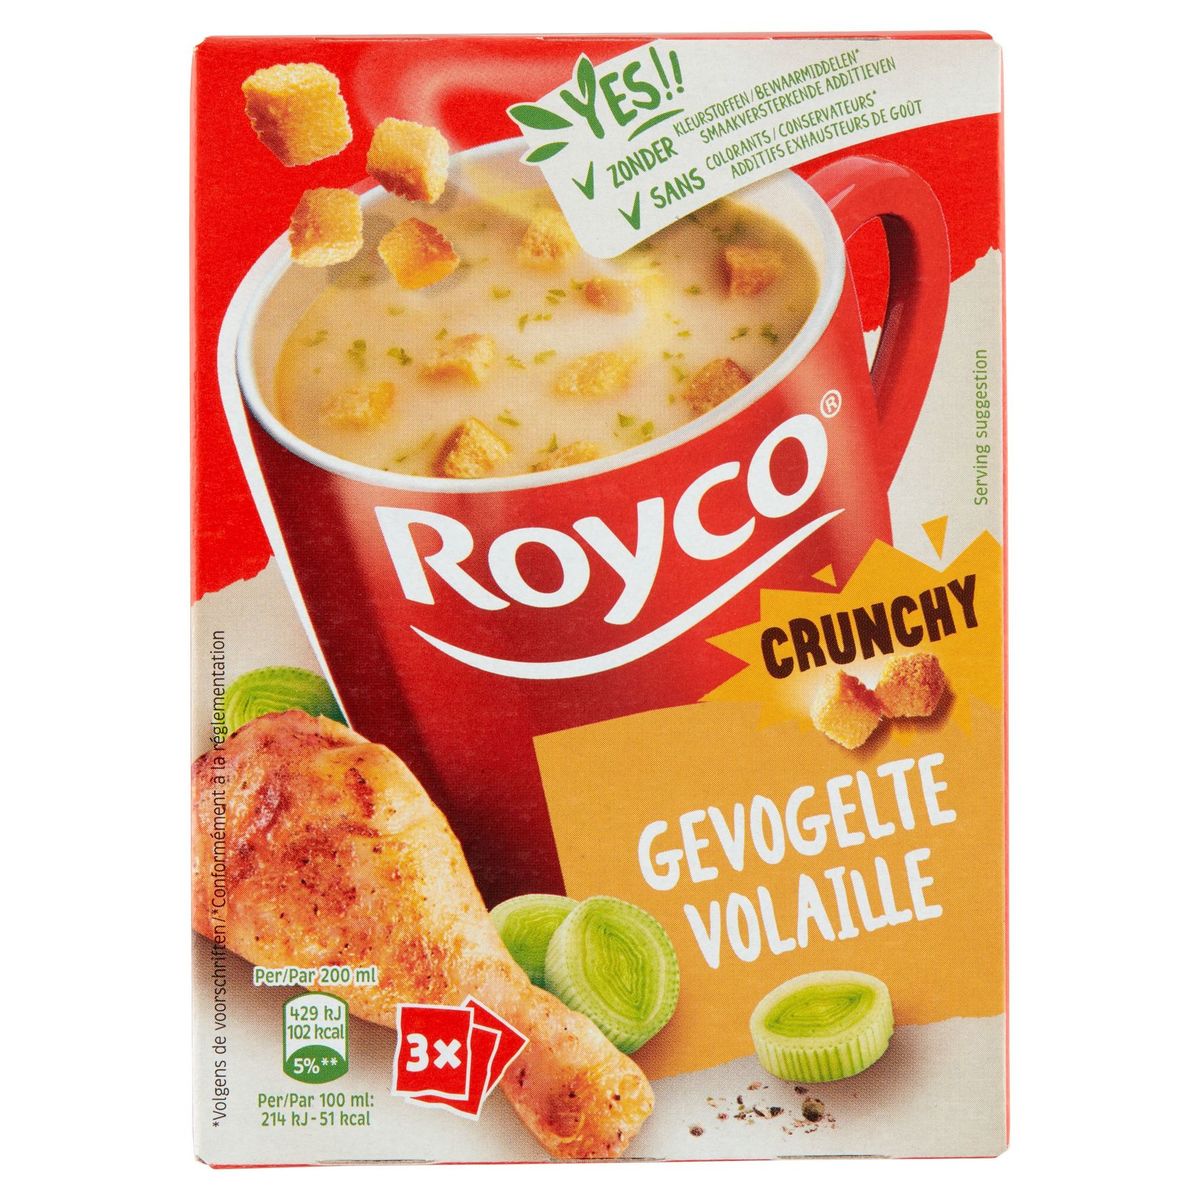 Royco Crunchy Volaille 3 x 20.5 g